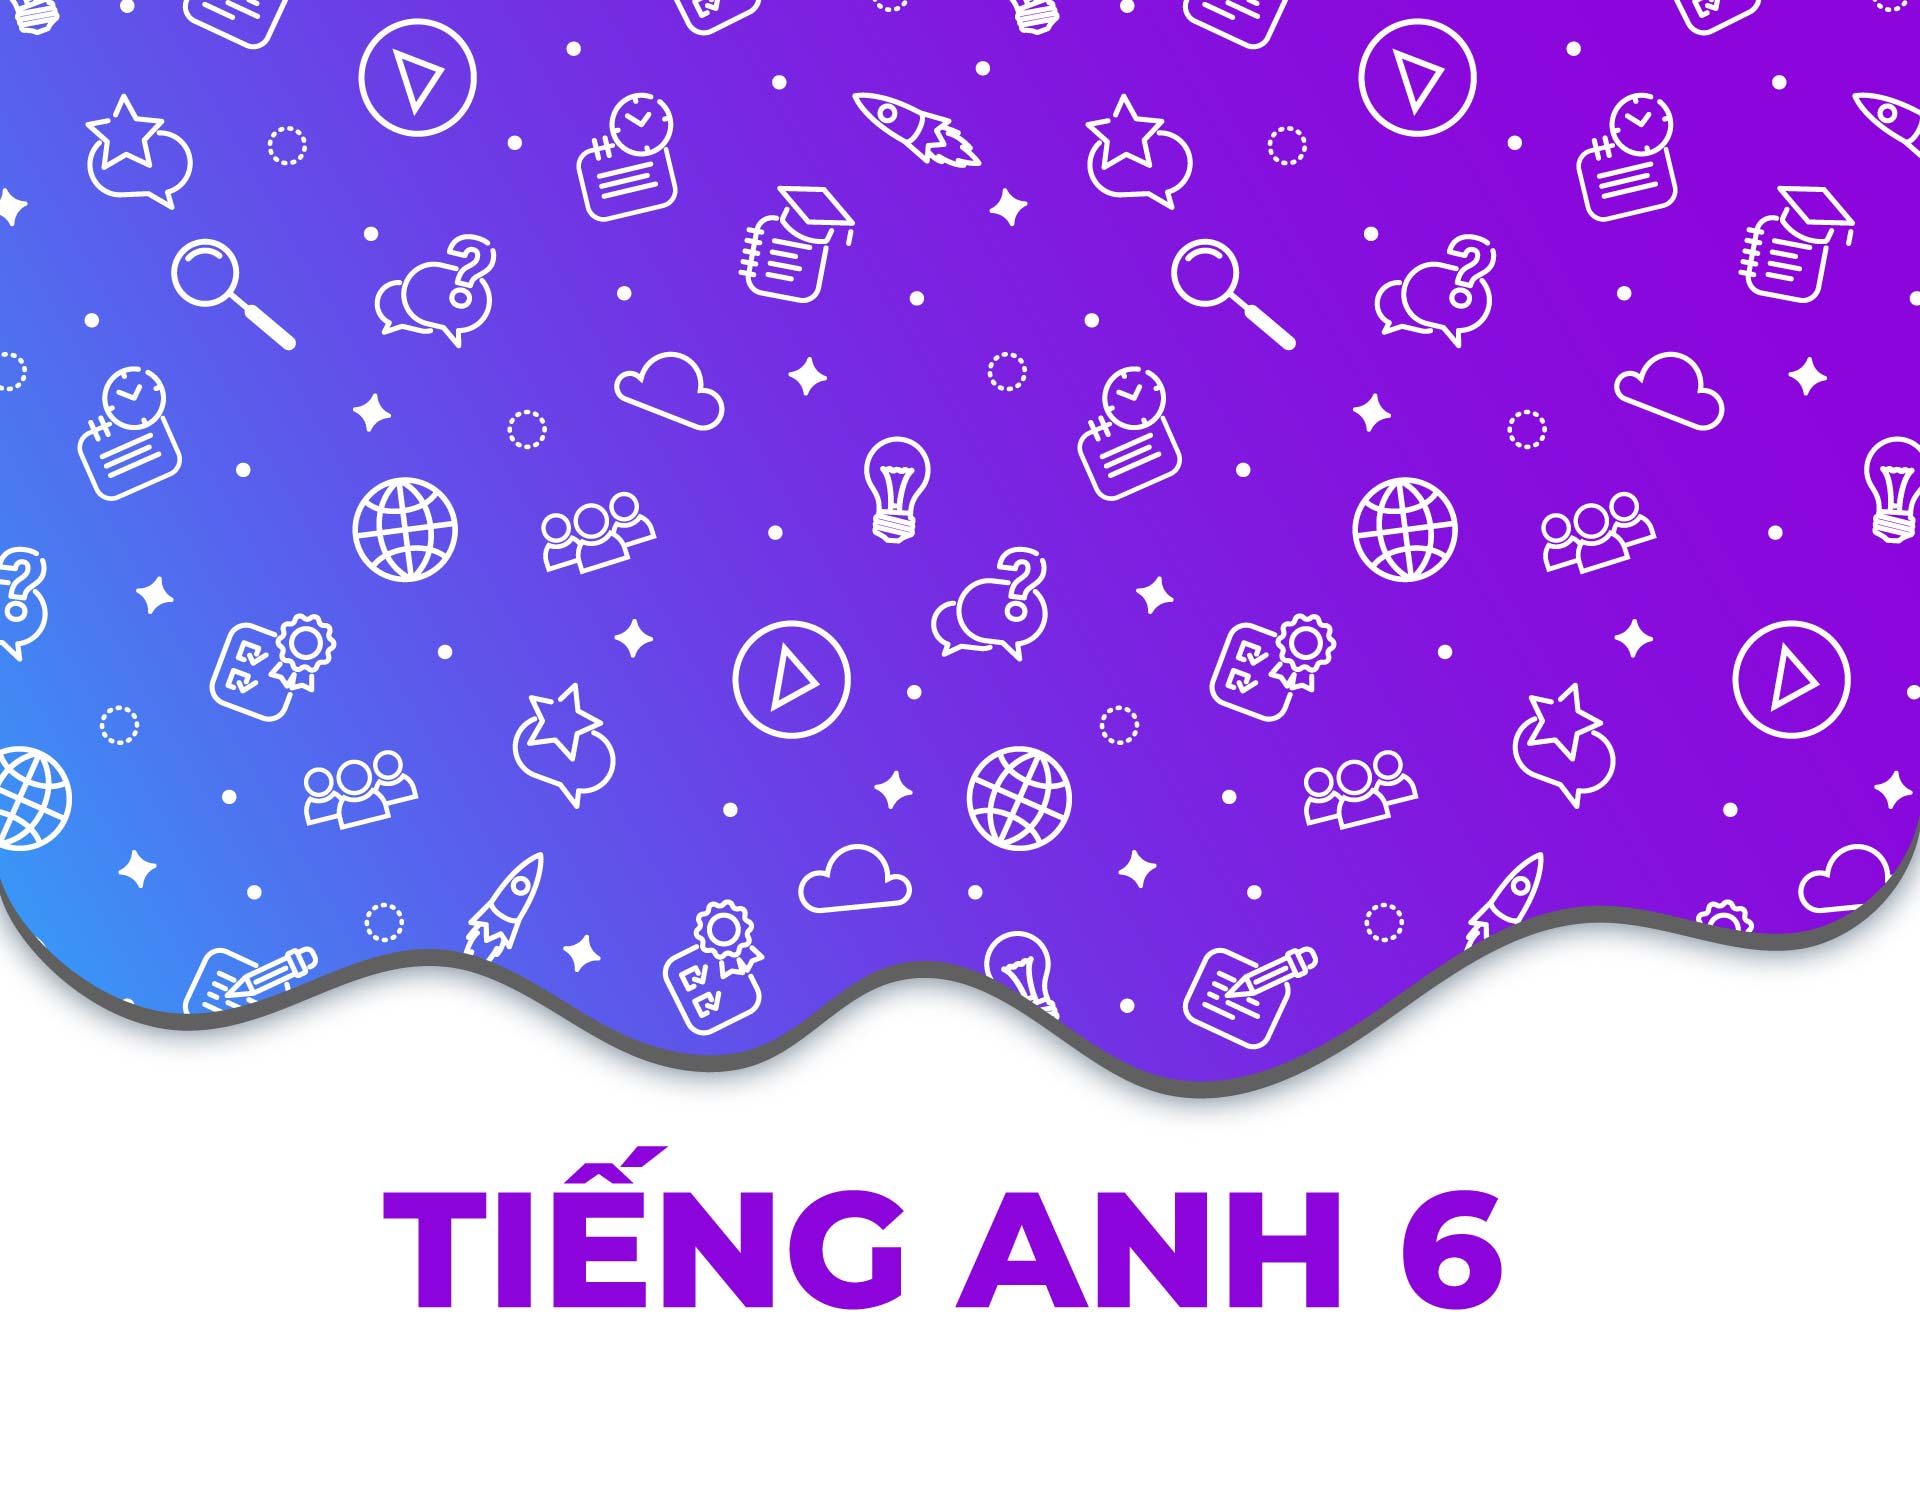 Tienganh6